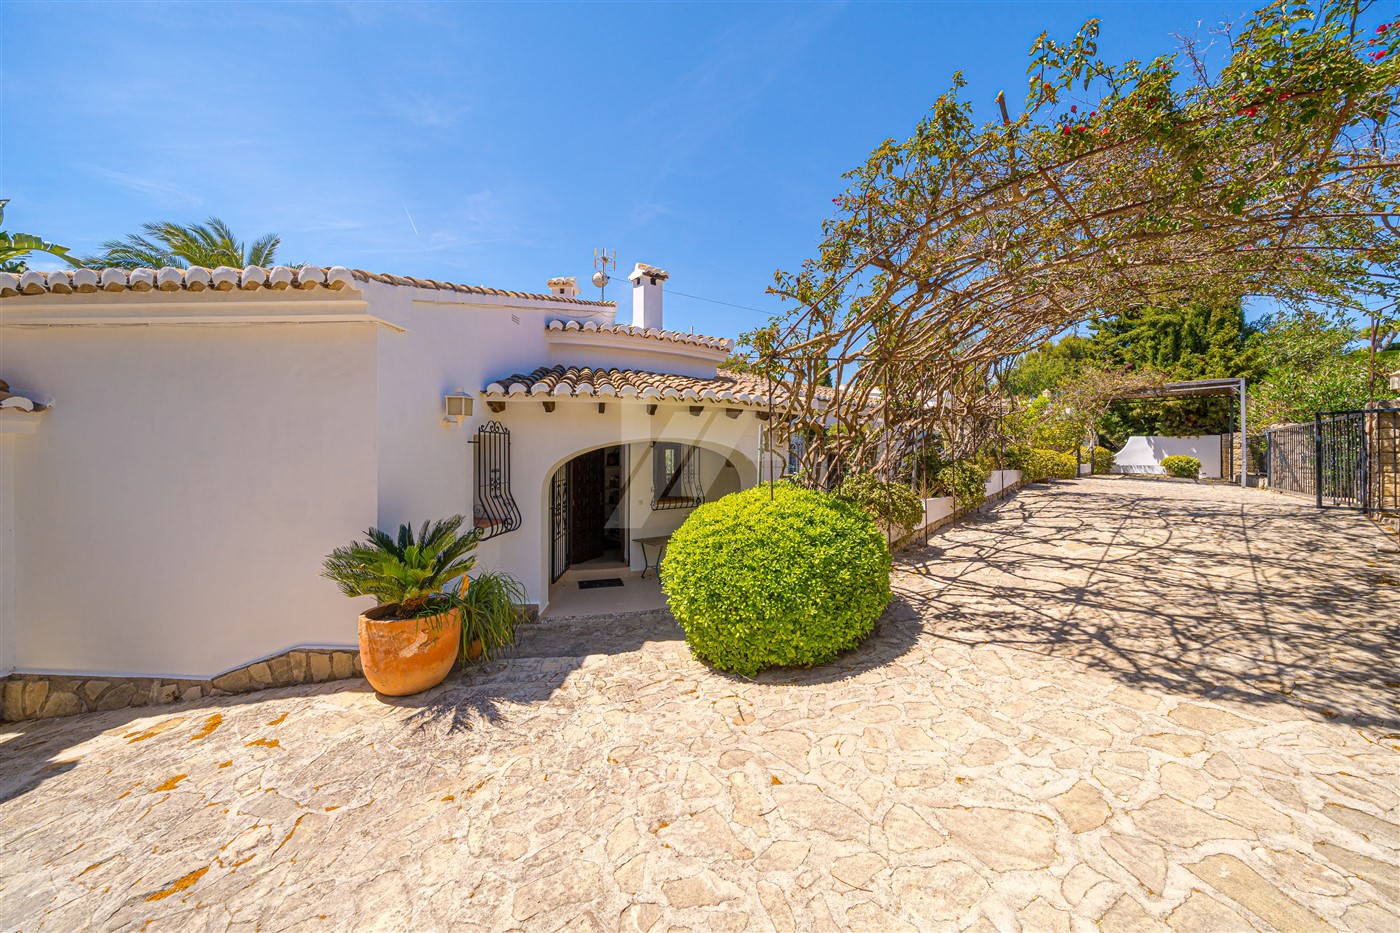 Villa in mediterrane stijl te koop in Benissa, Costa Blanca.